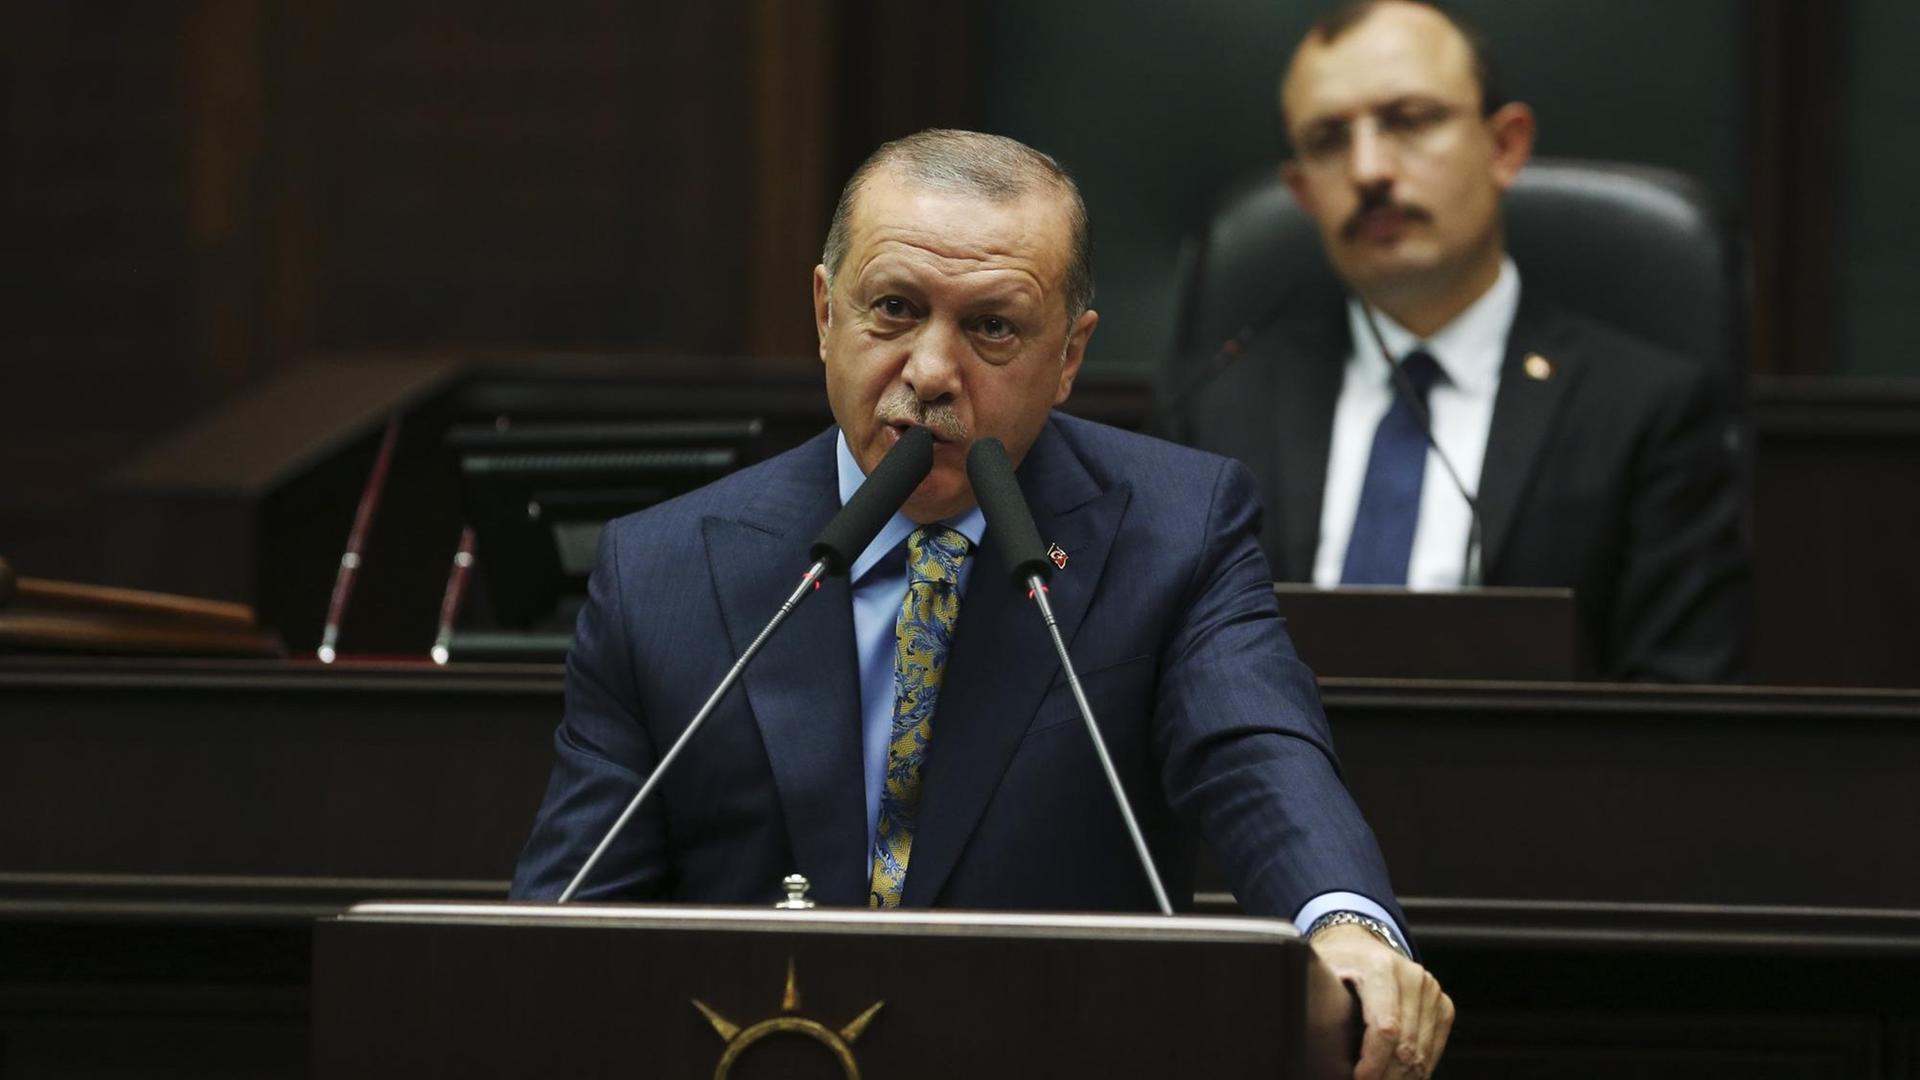 Der türkische Präsident Erdogan spricht hinter einem Pult stehend vor dem Parlament in Ankara.